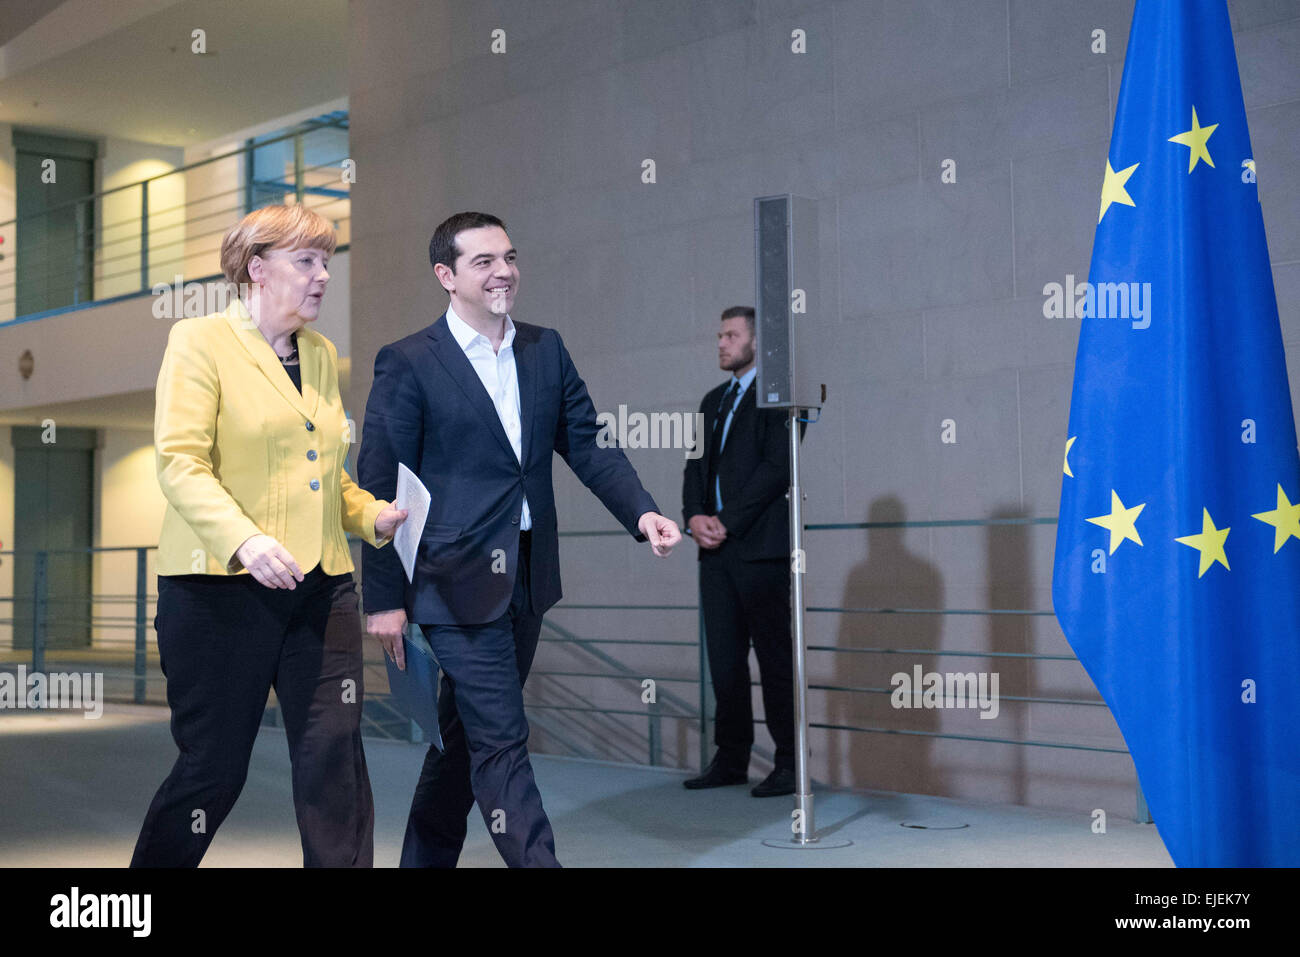 Angela Merkel, la chancelière allemande, se félicite de la Grèce Le Premier Ministre Alexis Tsipras avec honneurs militaires au German chancell Banque D'Images